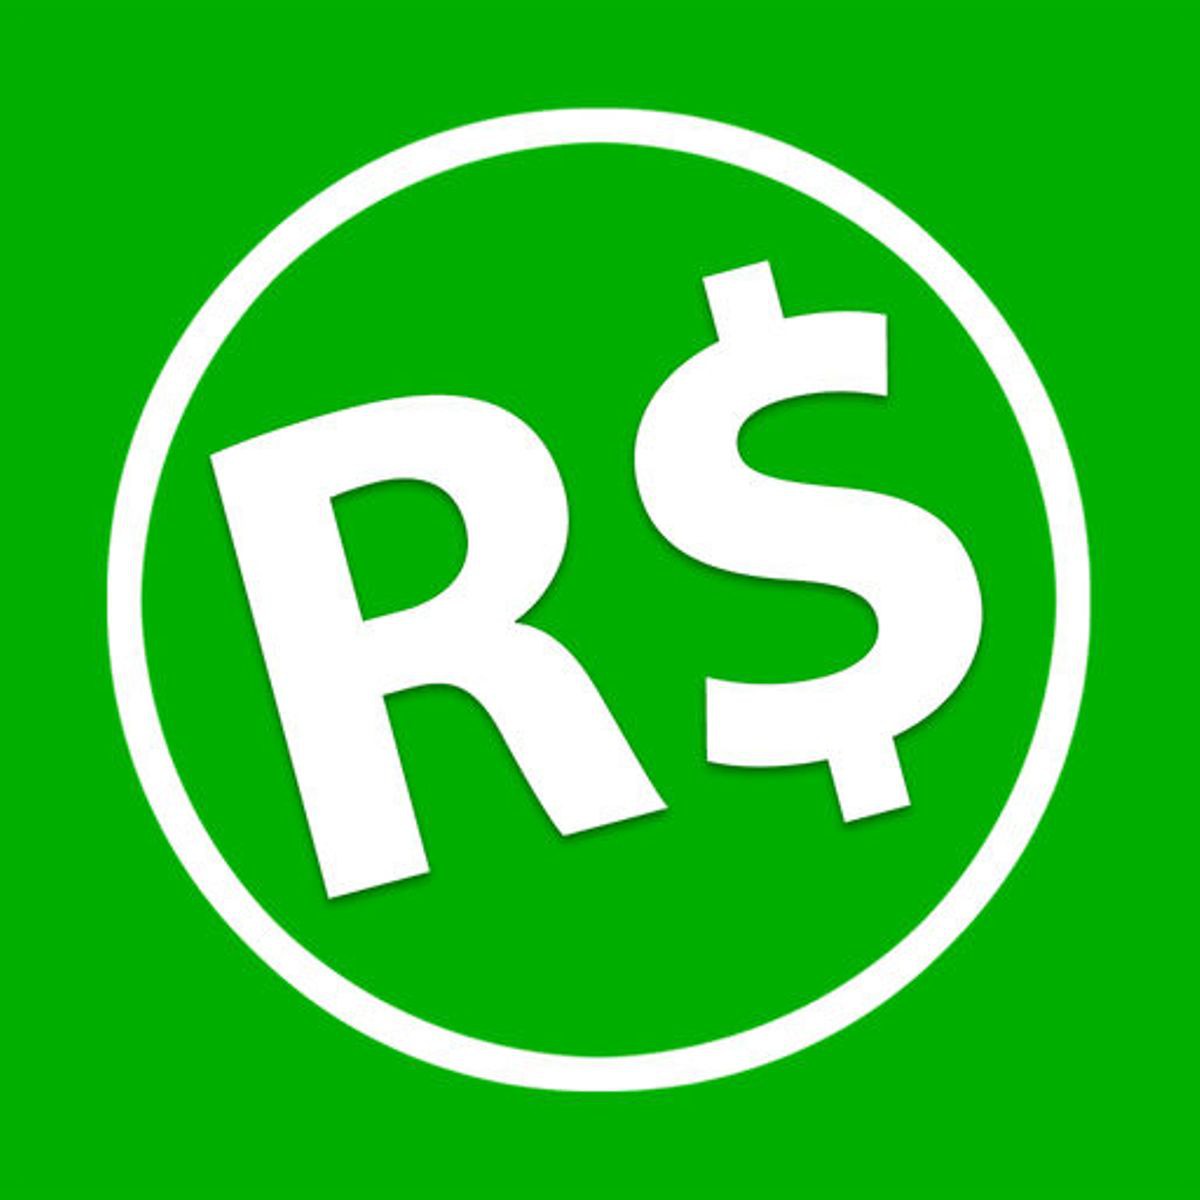 Rbx Robux Rewards - rbx places/rewards